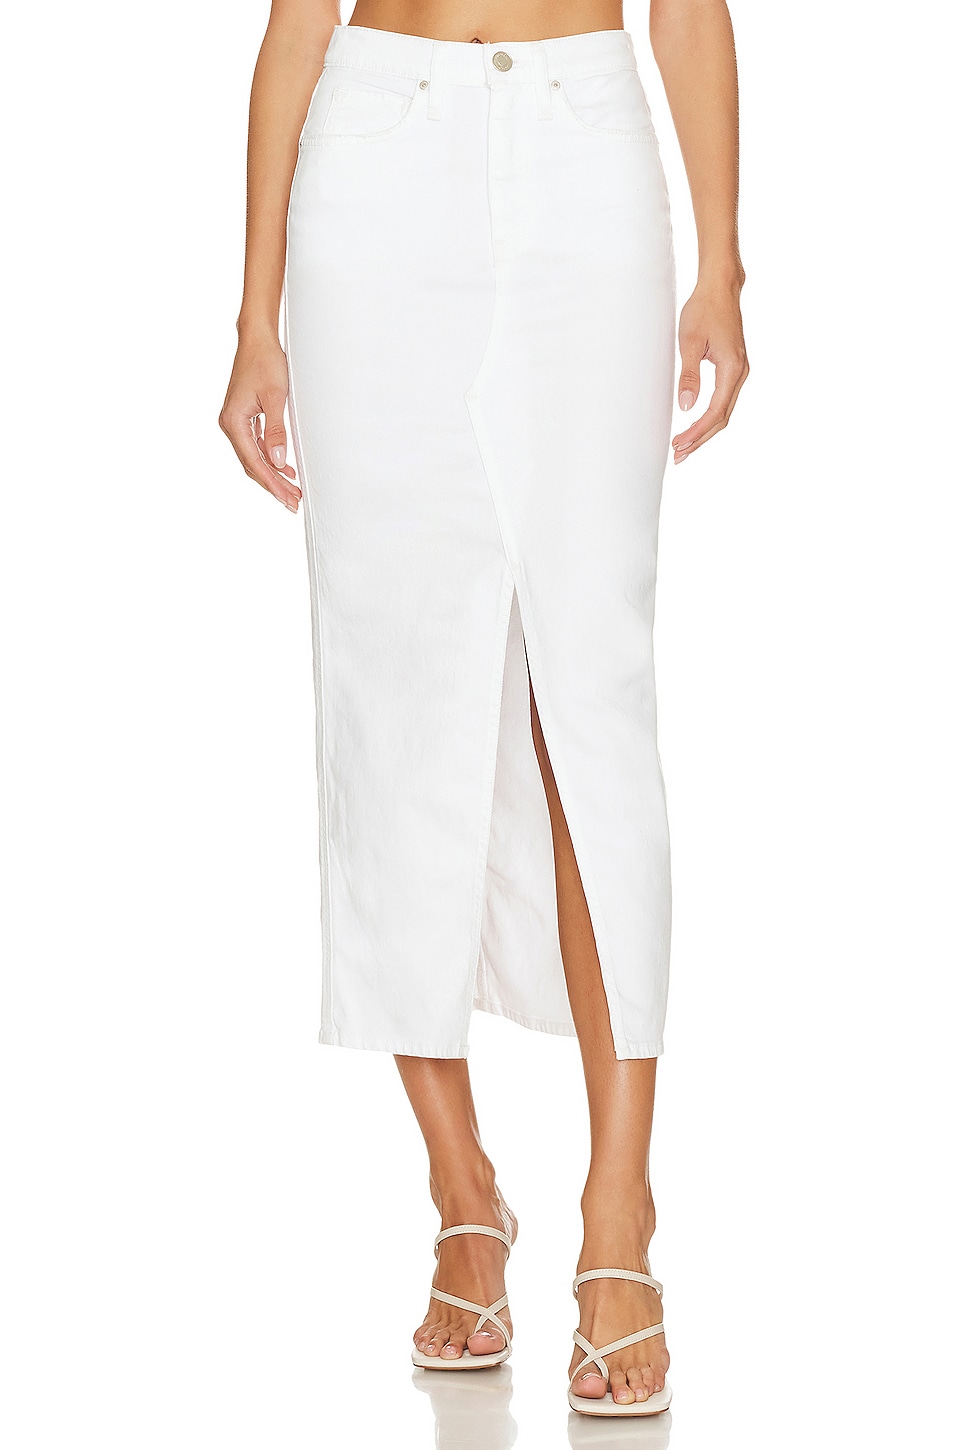 Hudson Jeans Reconstructed Skirt in White | REVOLVE